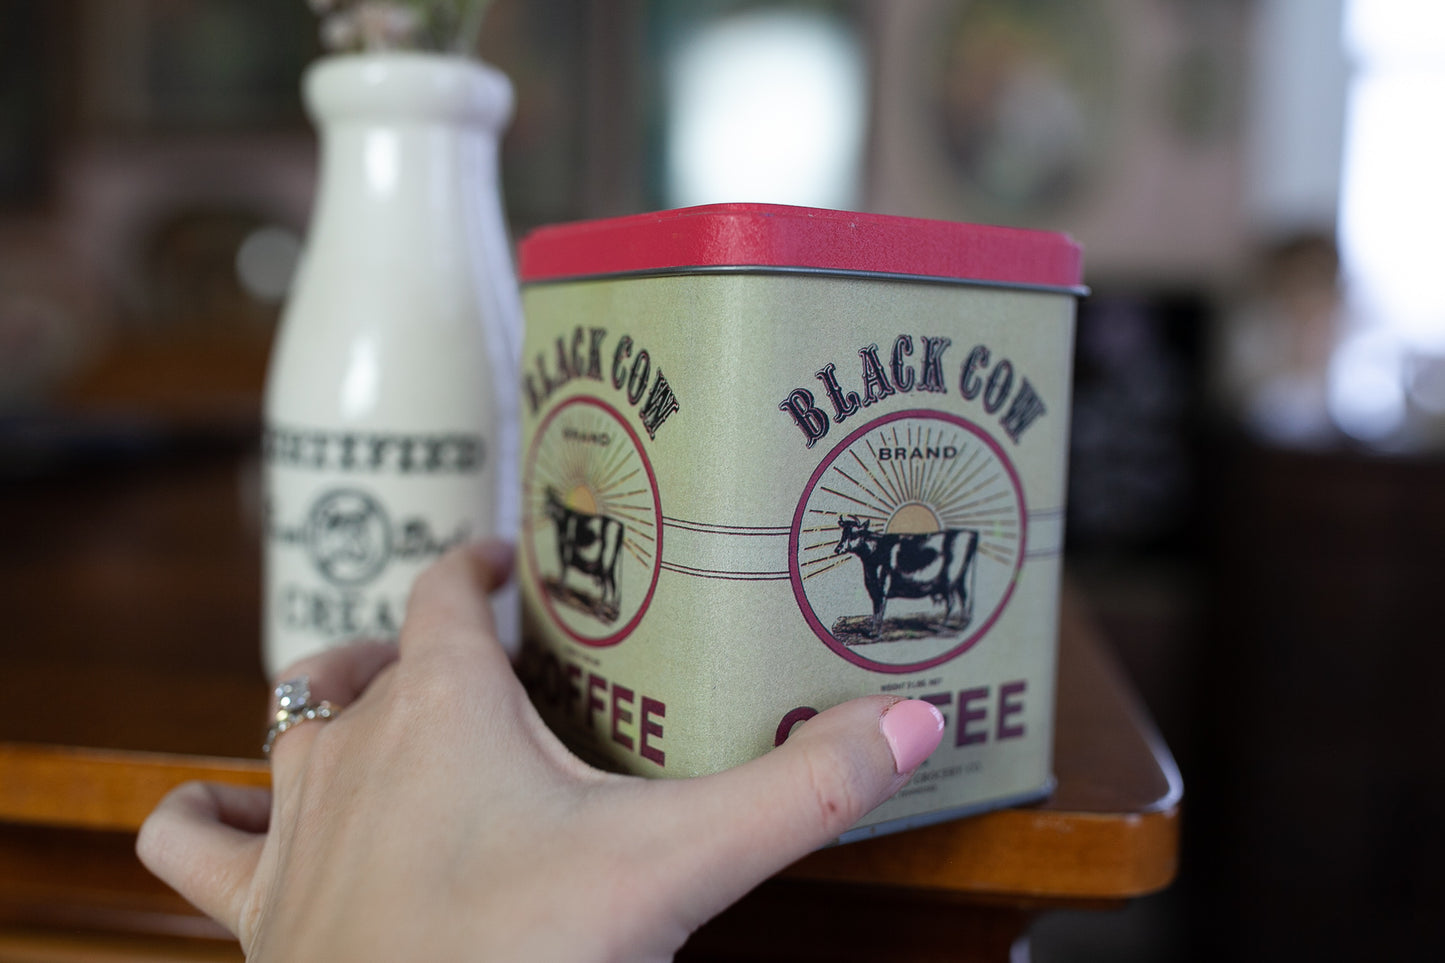 Vintage Cow Tin -Coffee Tin - Black Cow Brand Coffee